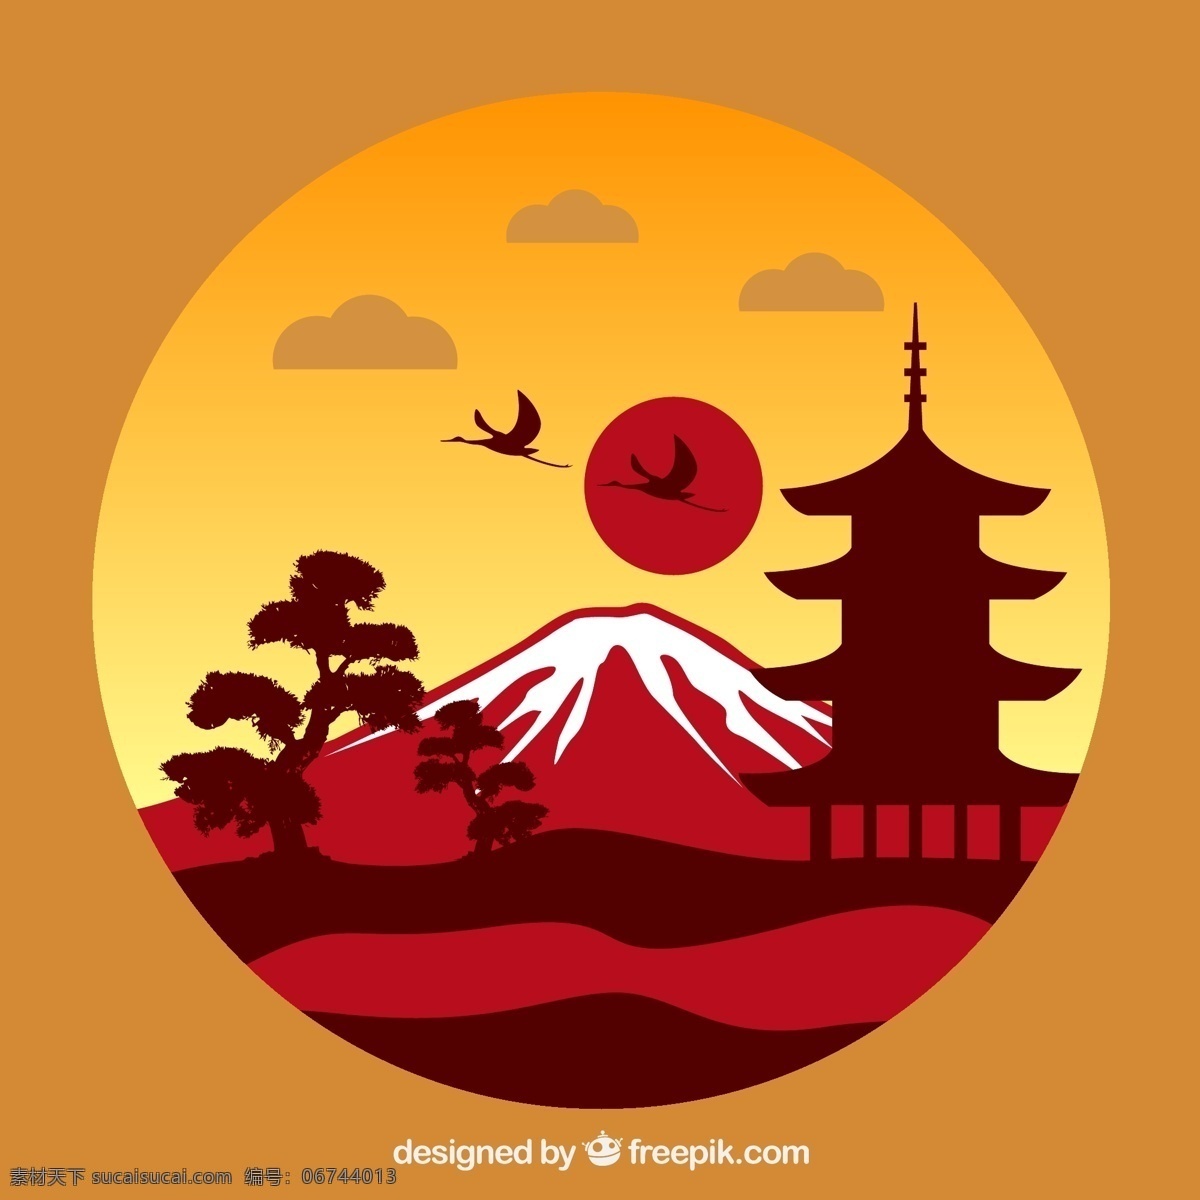 日本 风景 插画 矢量 仙鹤 松树 塔 富士山 太阳 矢量图 橙色